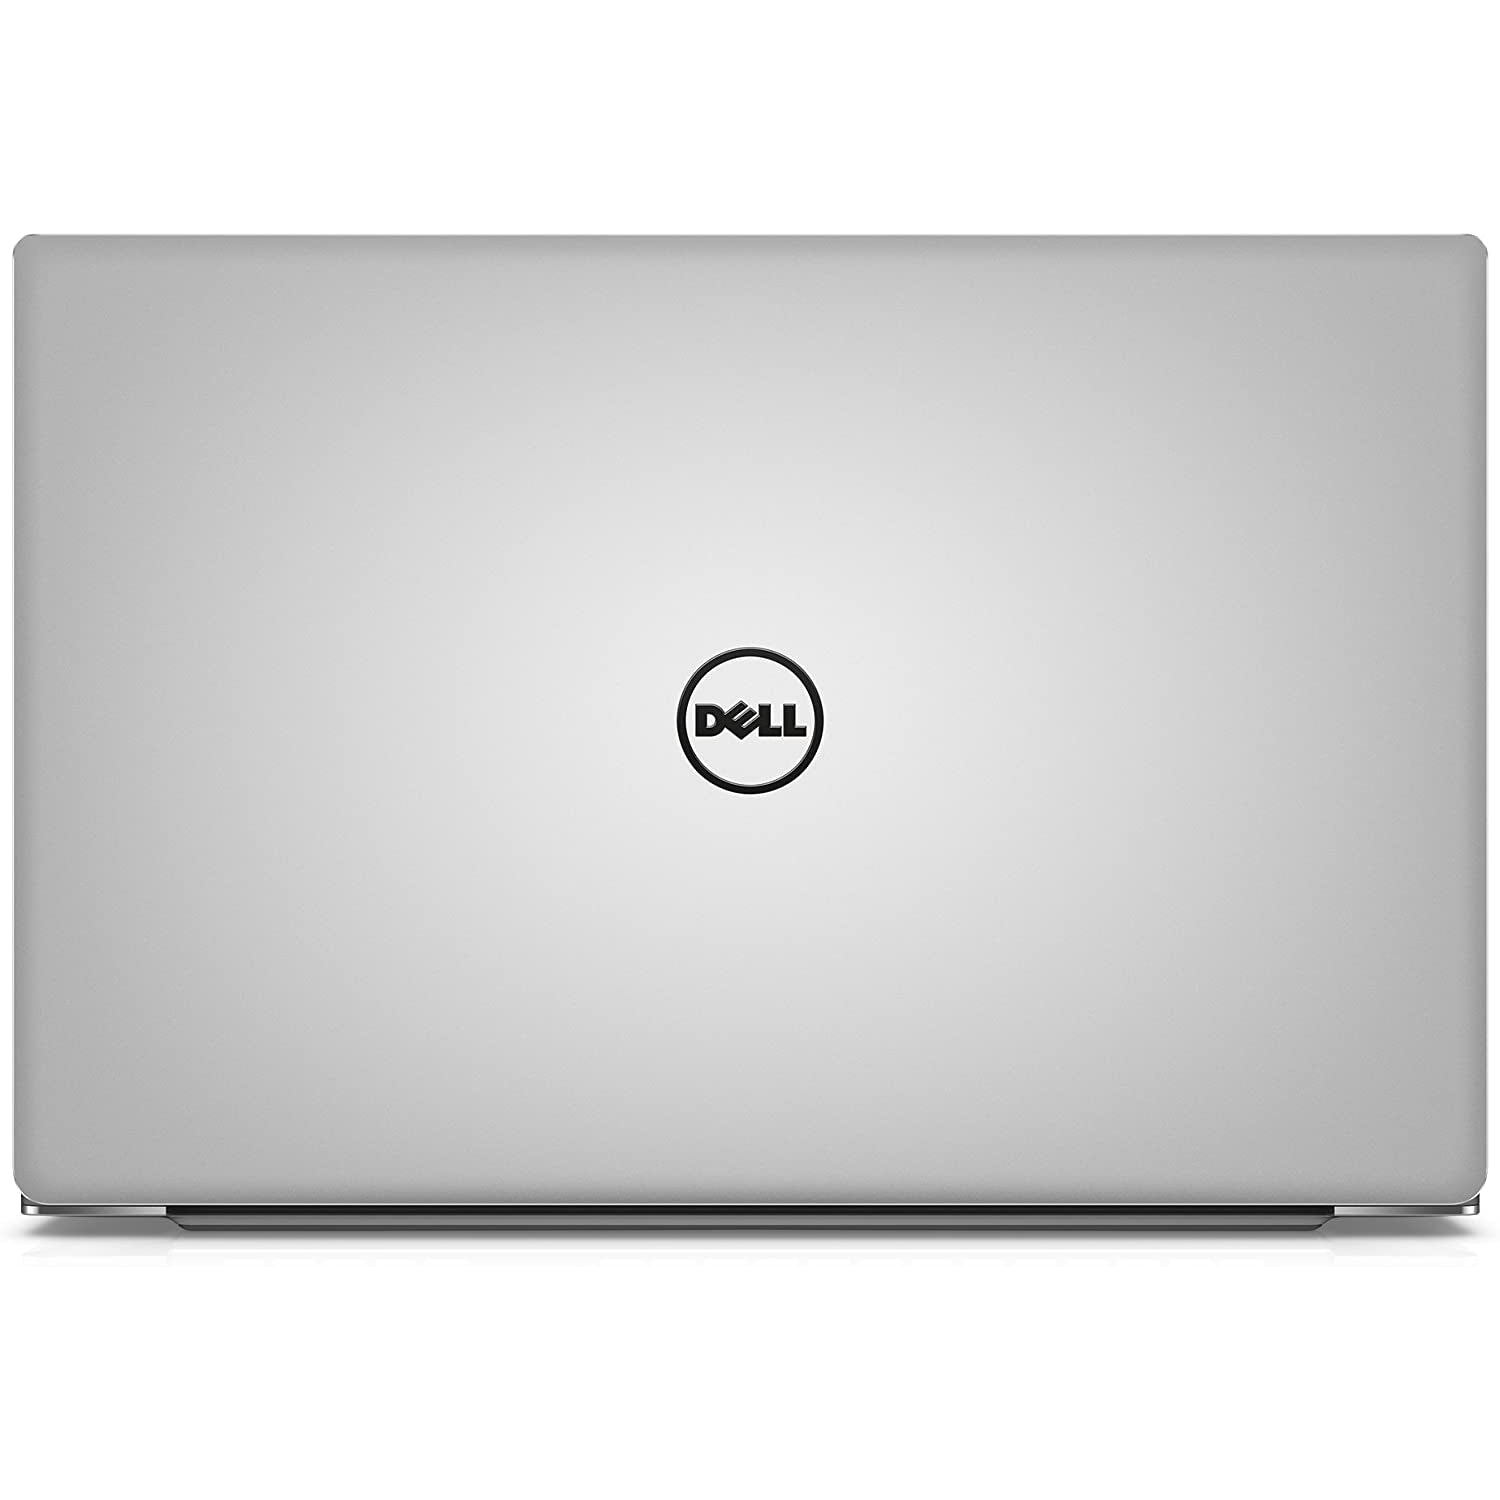 Dell XPS 13-9360 Laptop, Intel Core i7 7500U, 8GB RAM, 256GB SSD, Silver